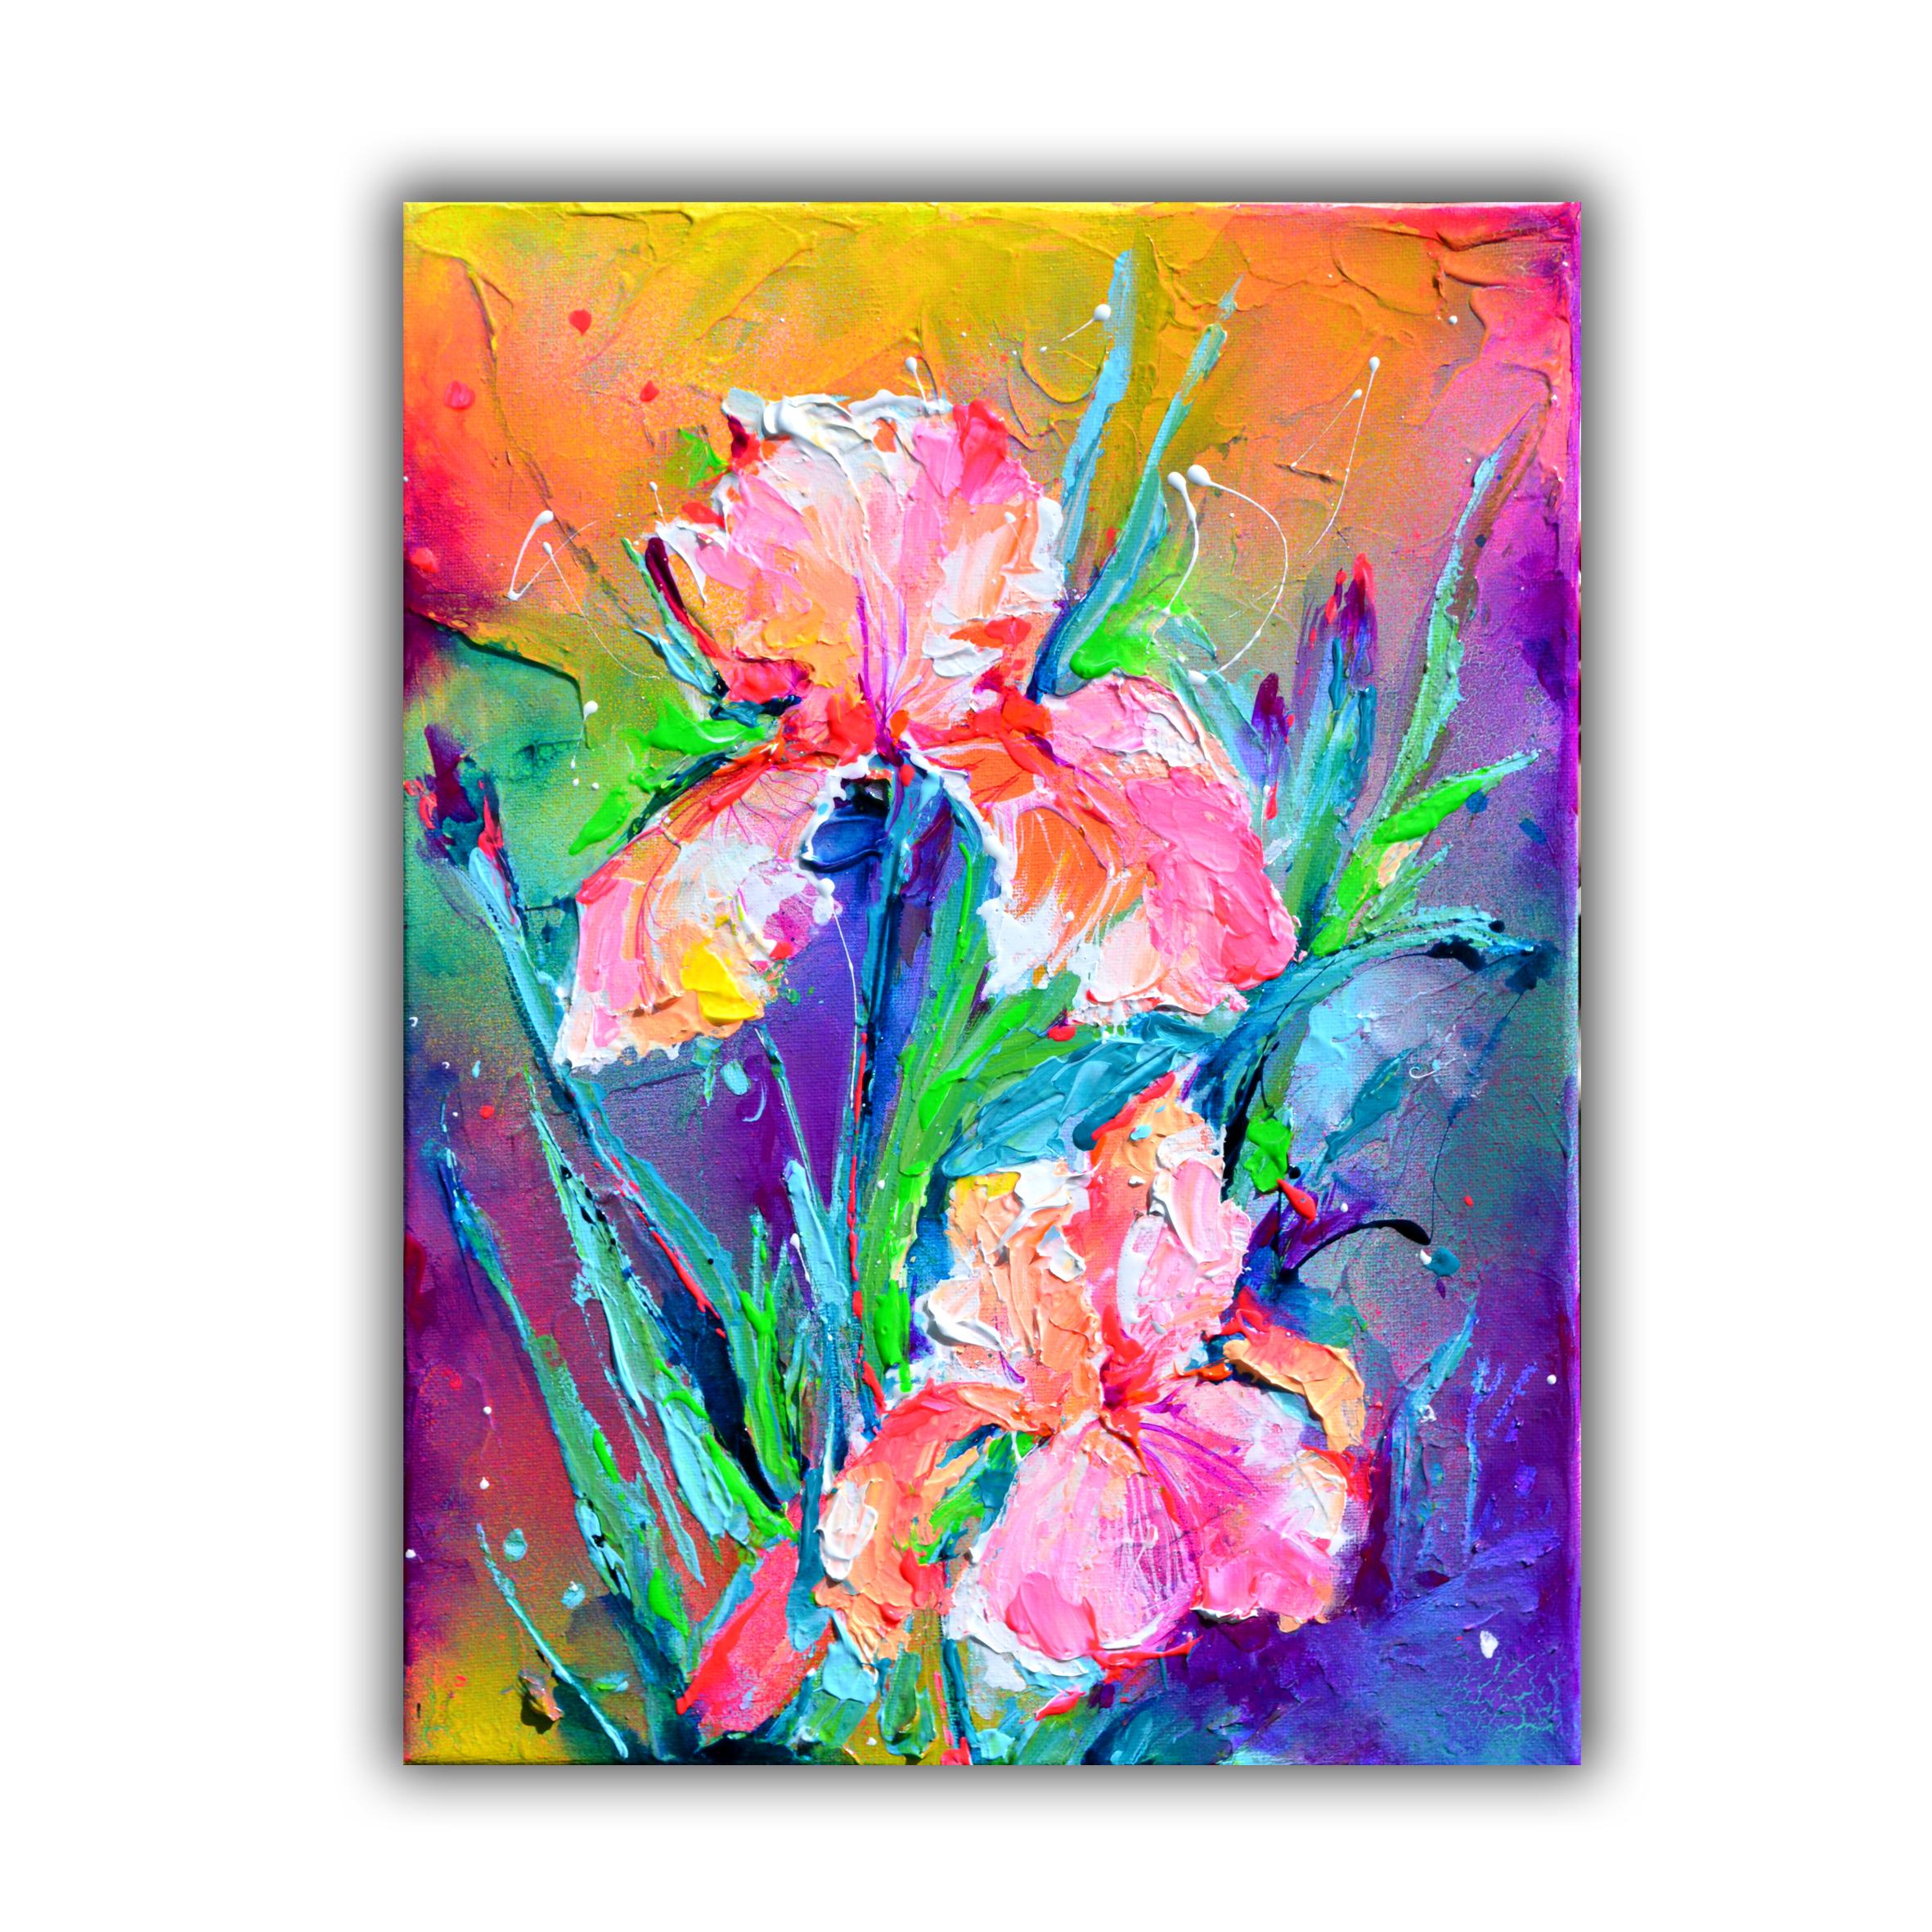 Iris-Blumenstrauß - Kleines Iris-Gemälde, Zinn-Iris-Gemälde, Textur-Blumenkunst – Painting von Soos Roxana Gabriela